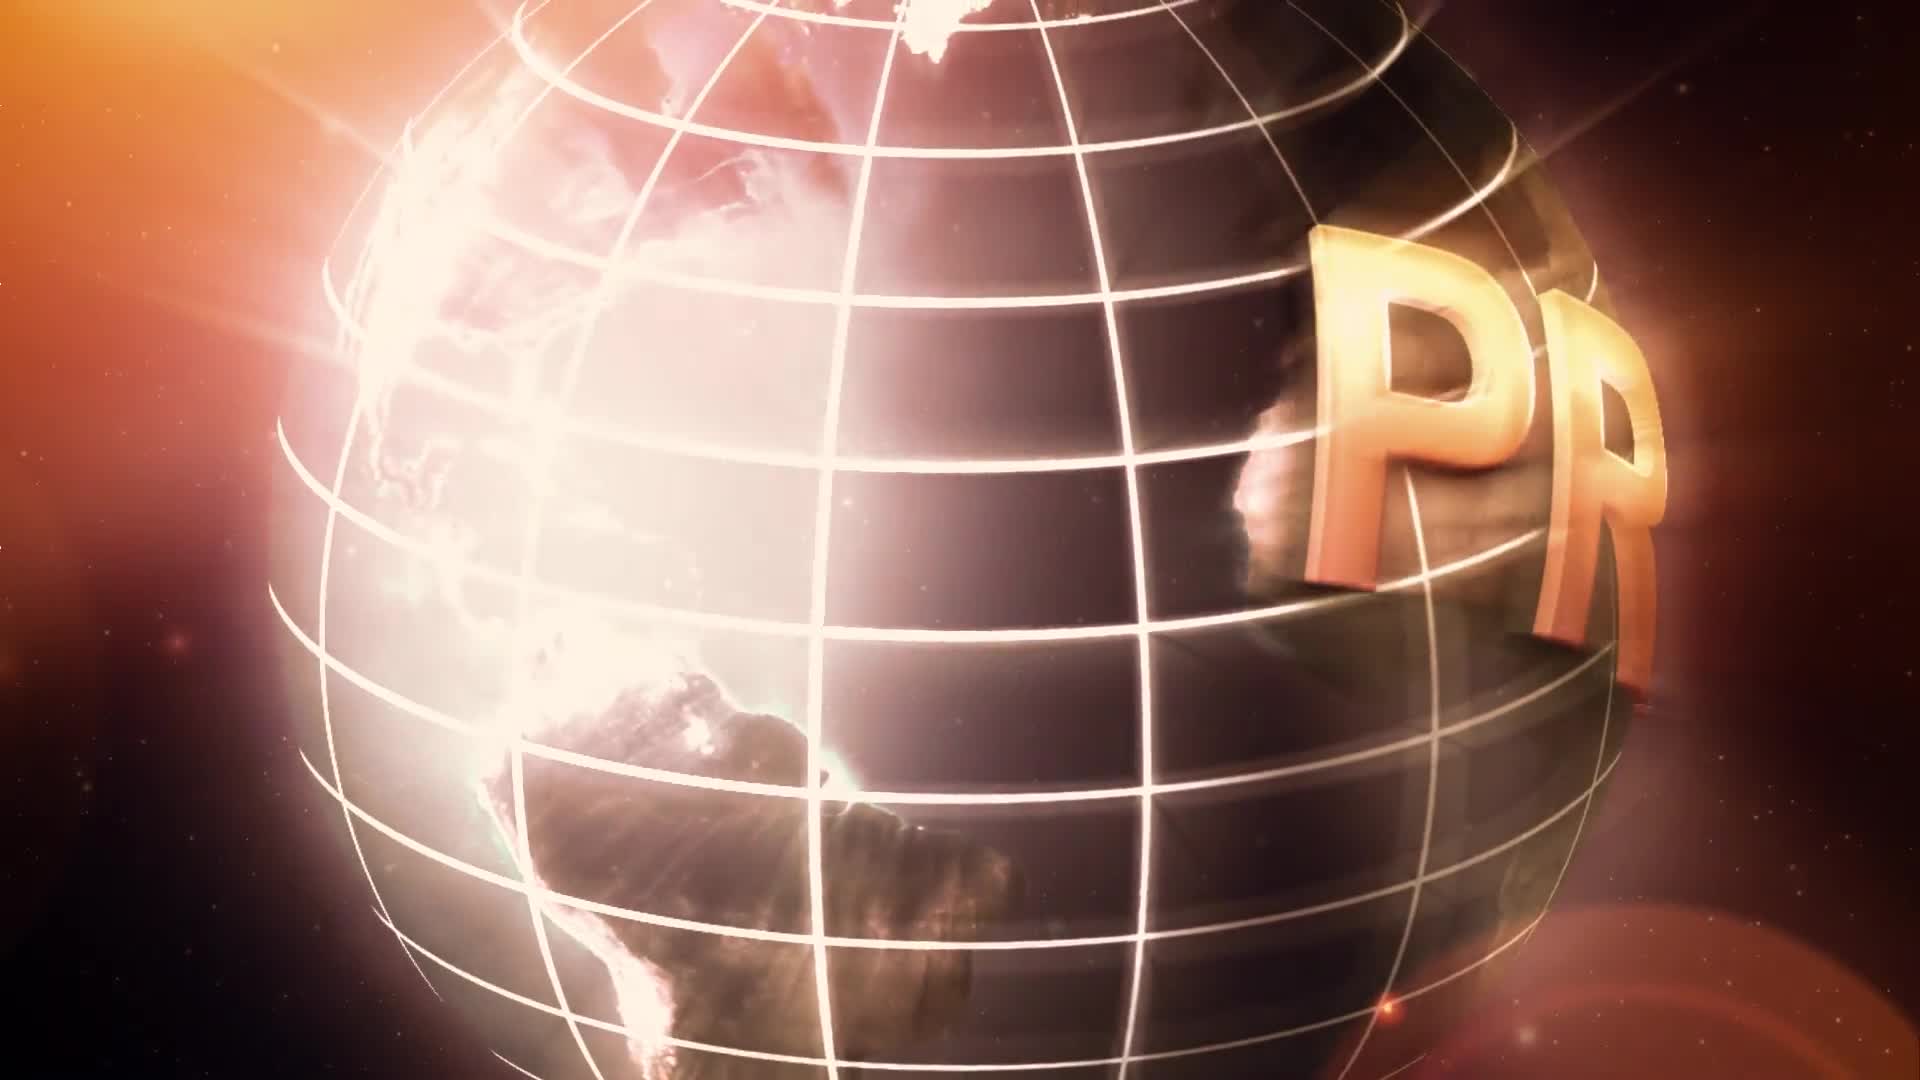 Retro Epic Trailer (Mogrt) Videohive 26354360 Premiere Pro Image 1